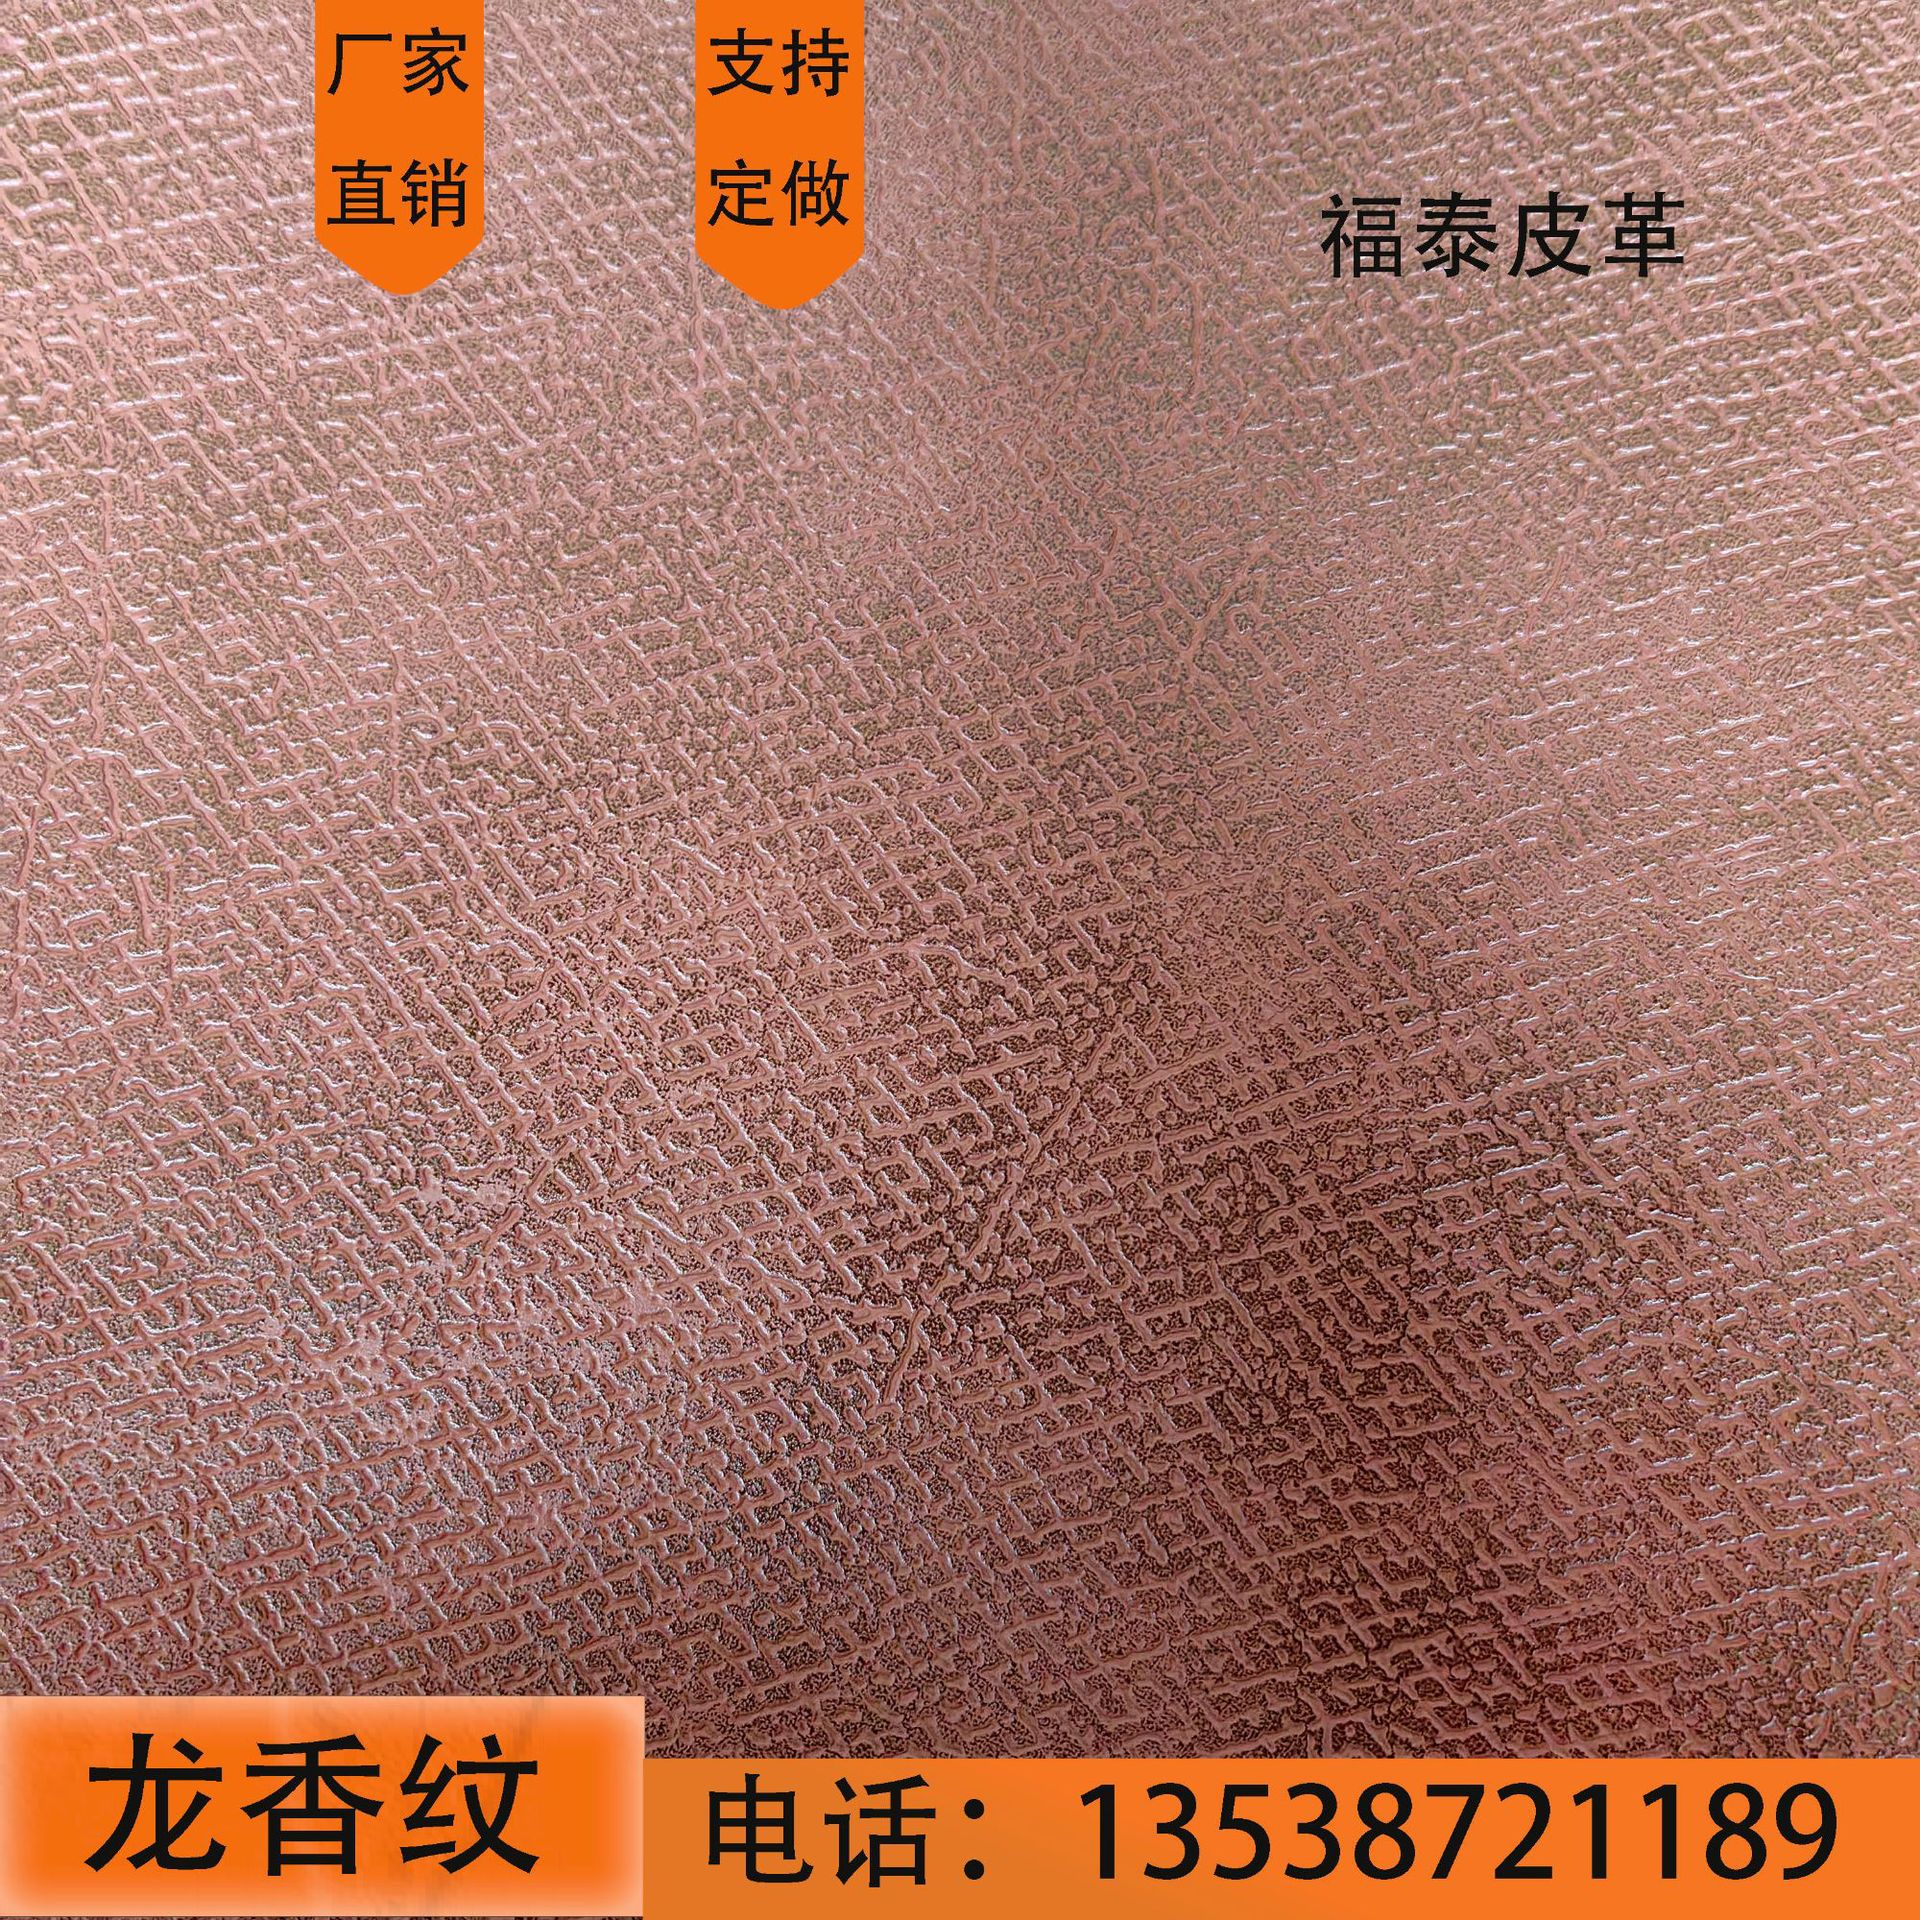 广州厂家龙香纹黄二层牛皮整张再升革加无溶剂箱包手袋真牛皮革料